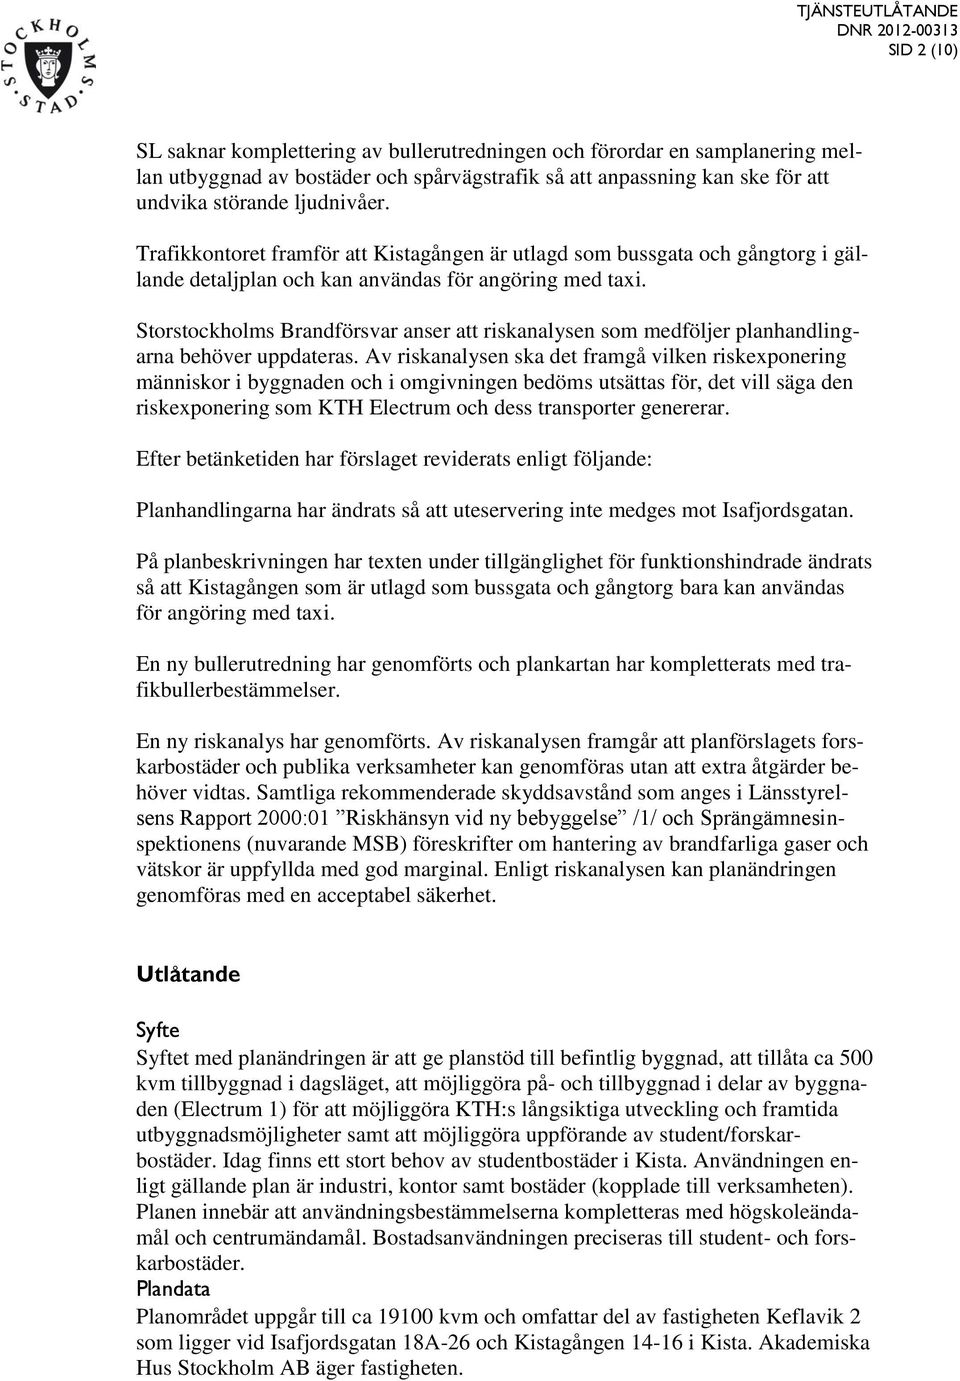 Storstockholms Brandförsvar anser att riskanalysen som medföljer planhandlingarna behöver uppdateras.